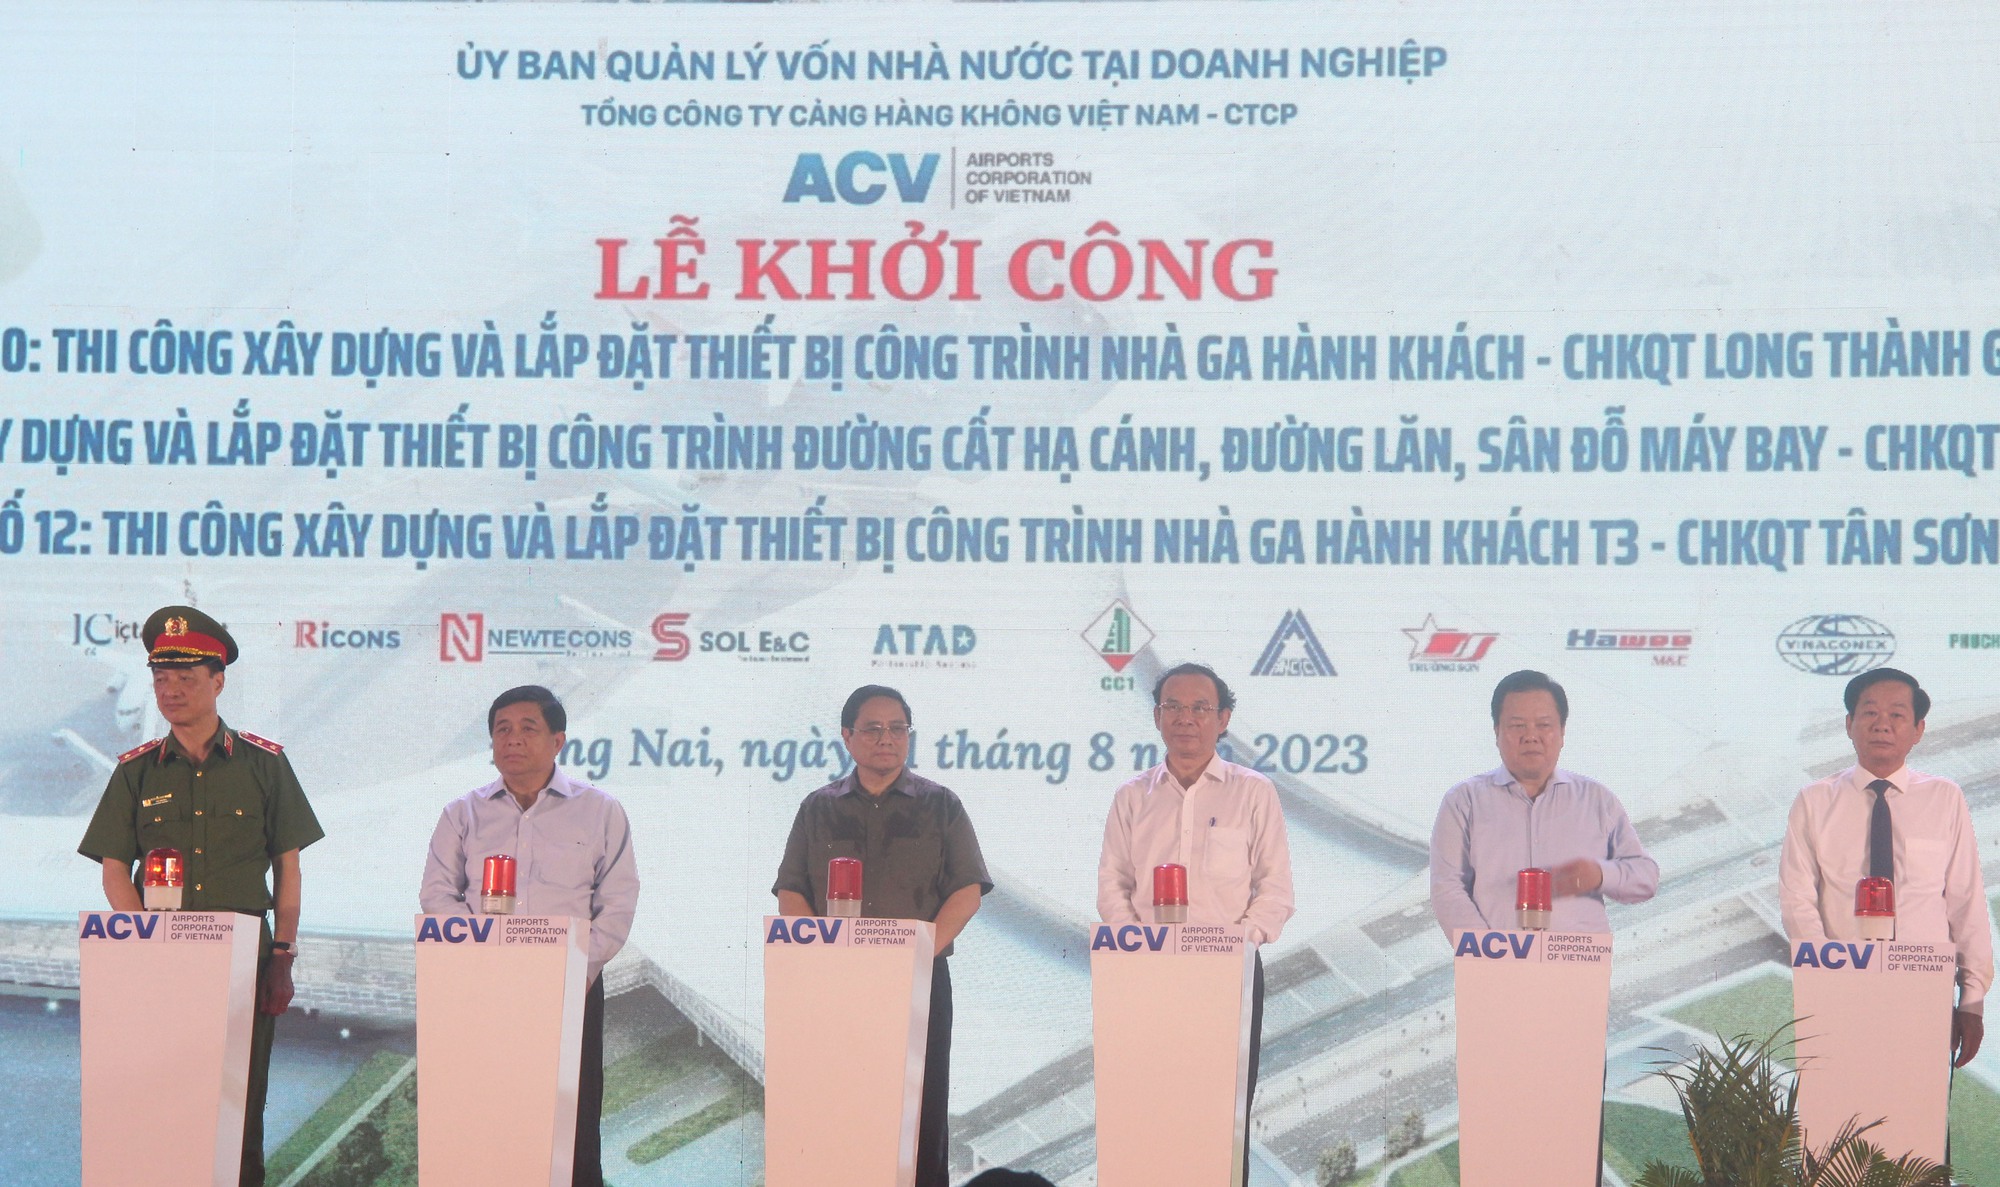 Thủ tướng nhấn nút khởi công nhà ga sân bay Long Thành và Tân Sơn Nhất - Ảnh 4.